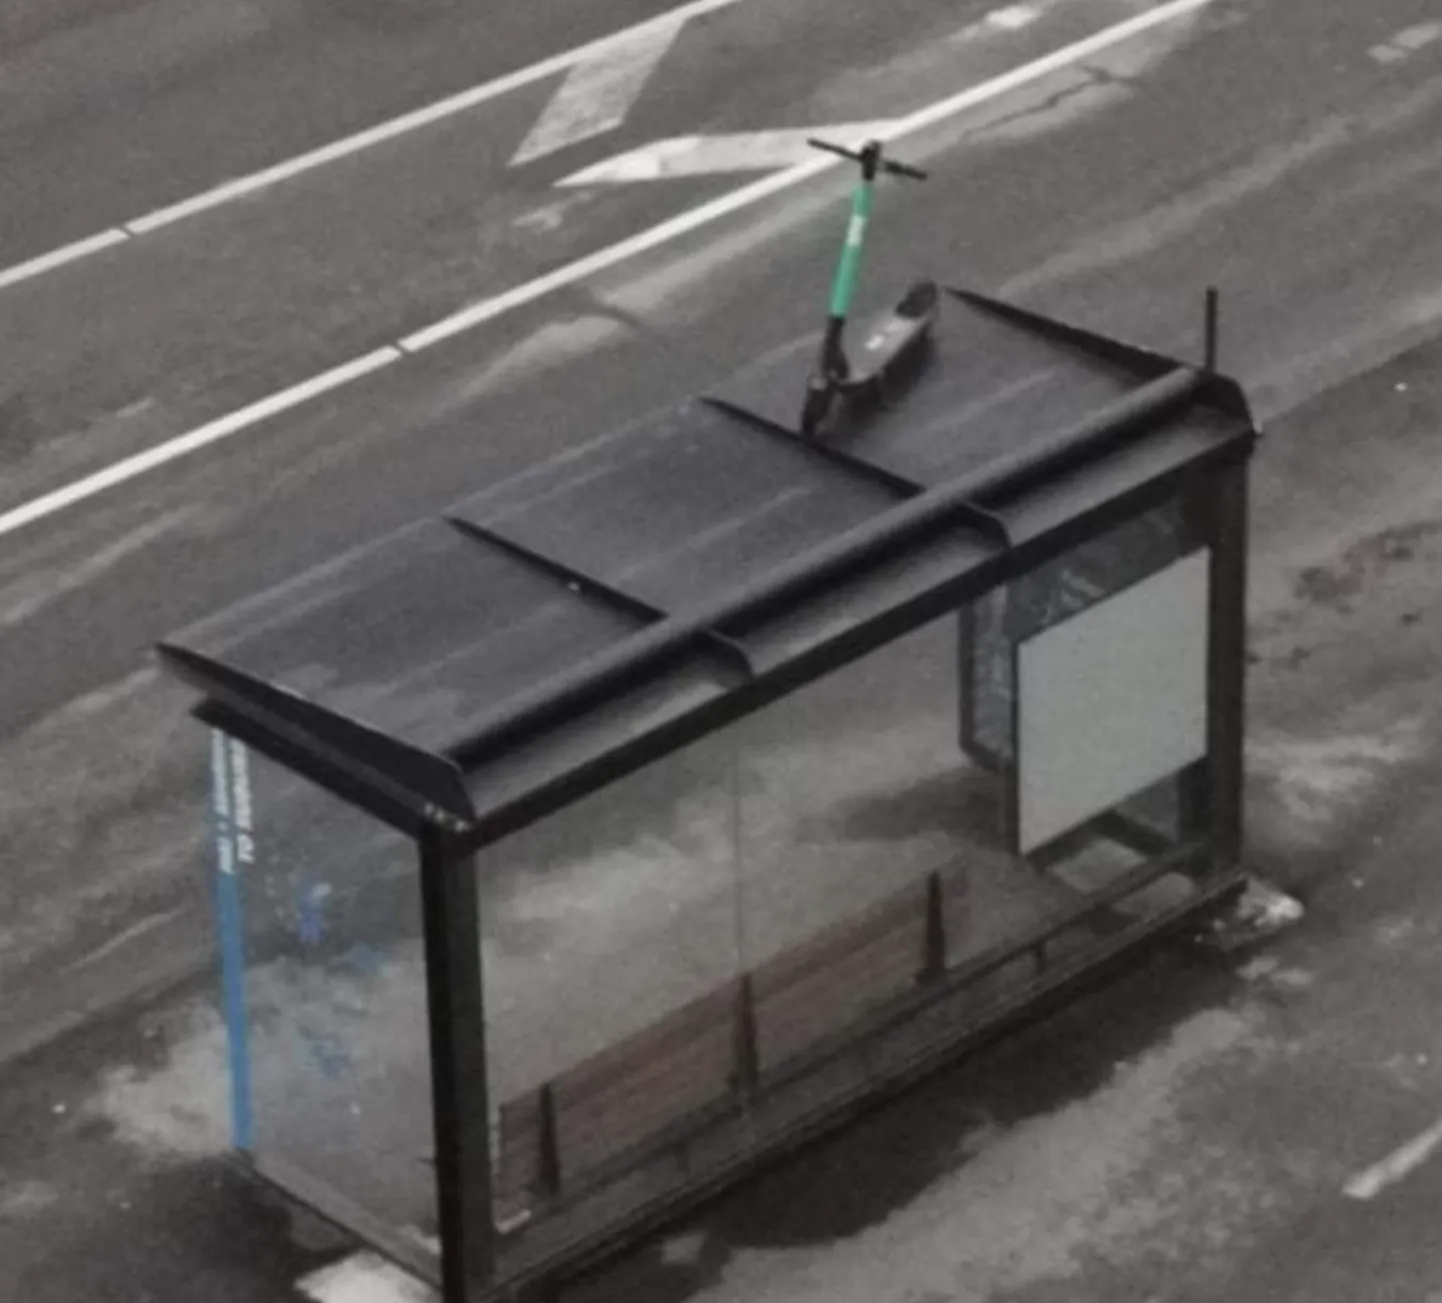 Pärnus jäi tähelepanelikule inimesele 28. novembril silma Mai tänava bussipeatuse ootepaviljoni katusele pargitud Bolti elektritõukeratas. Foto on illustratiivne